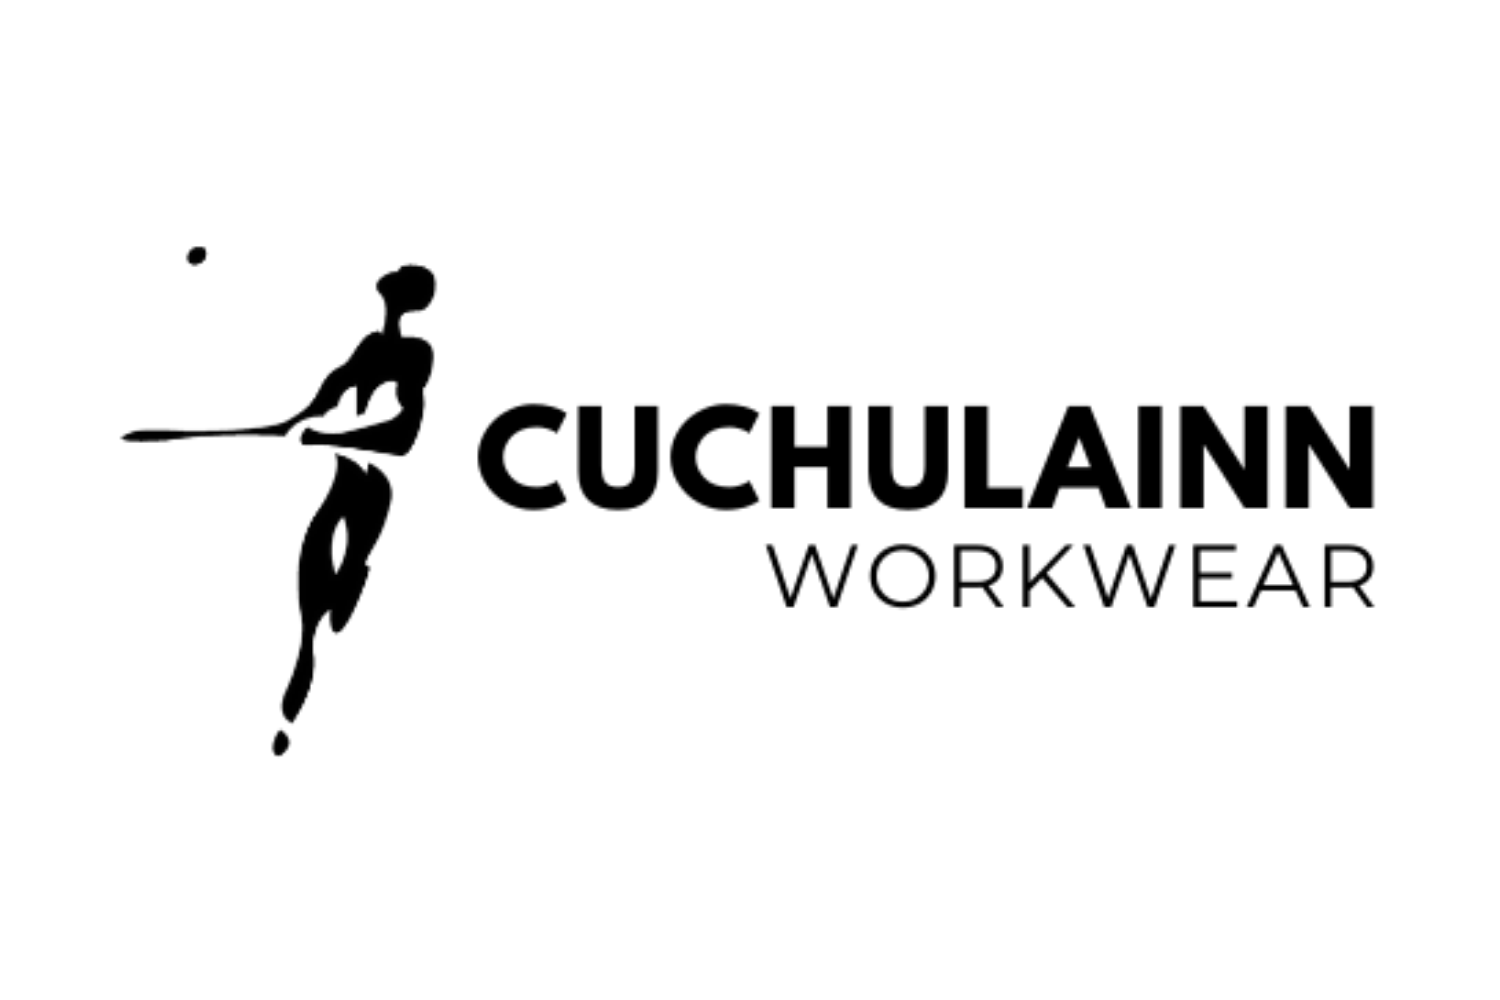 Cuchulainn Workwear